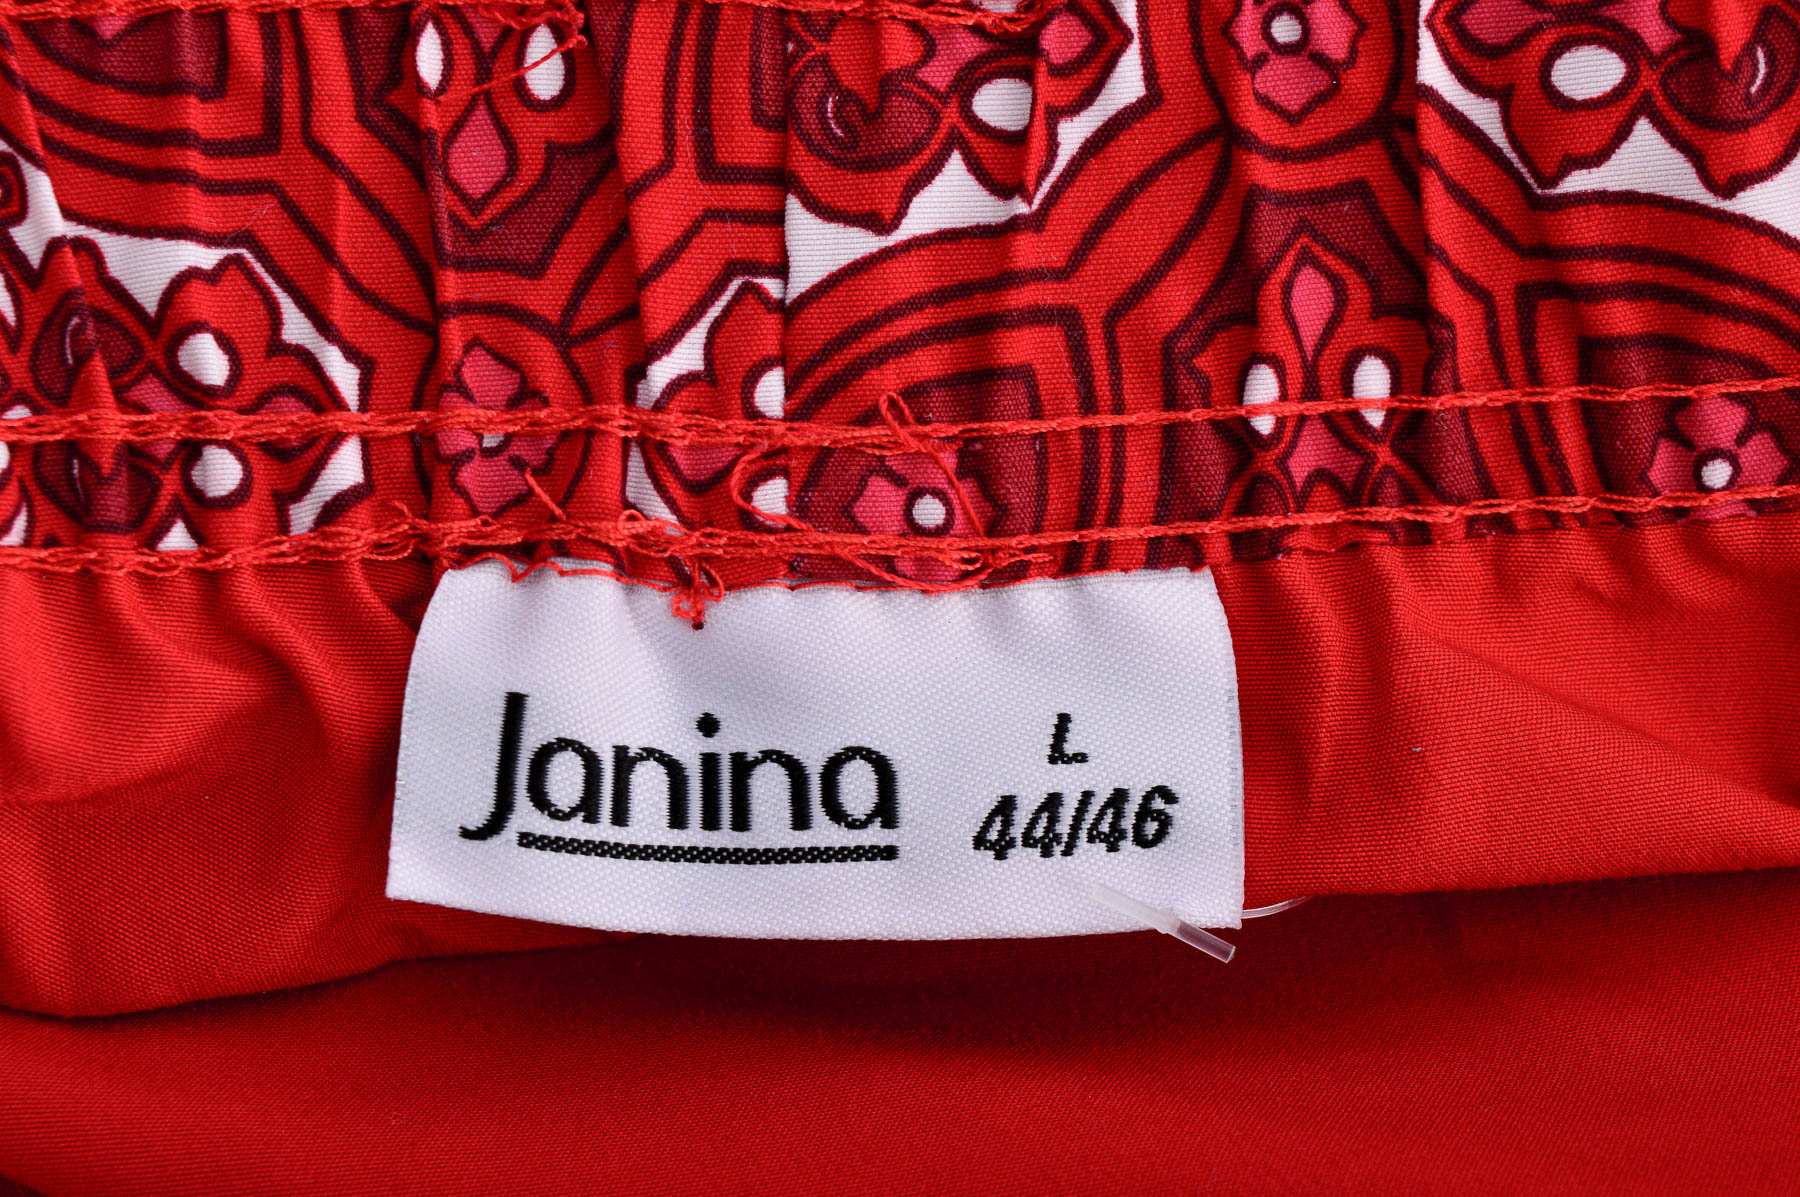 Women's shorts - Janina - 2